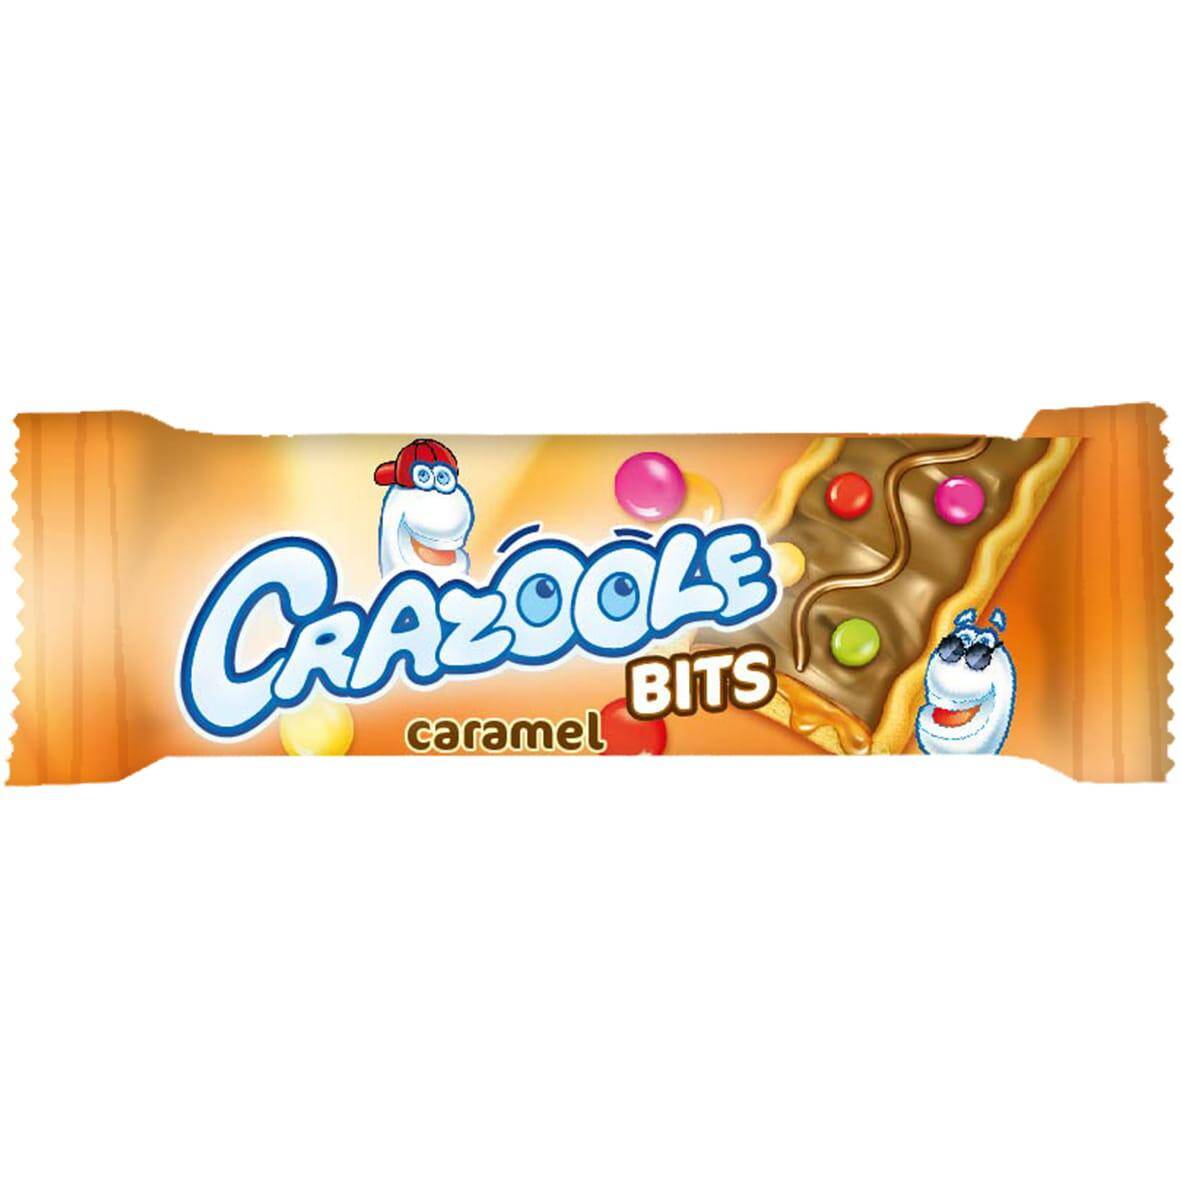 Crazoole cistaka z czekoladą 27g KARMEL